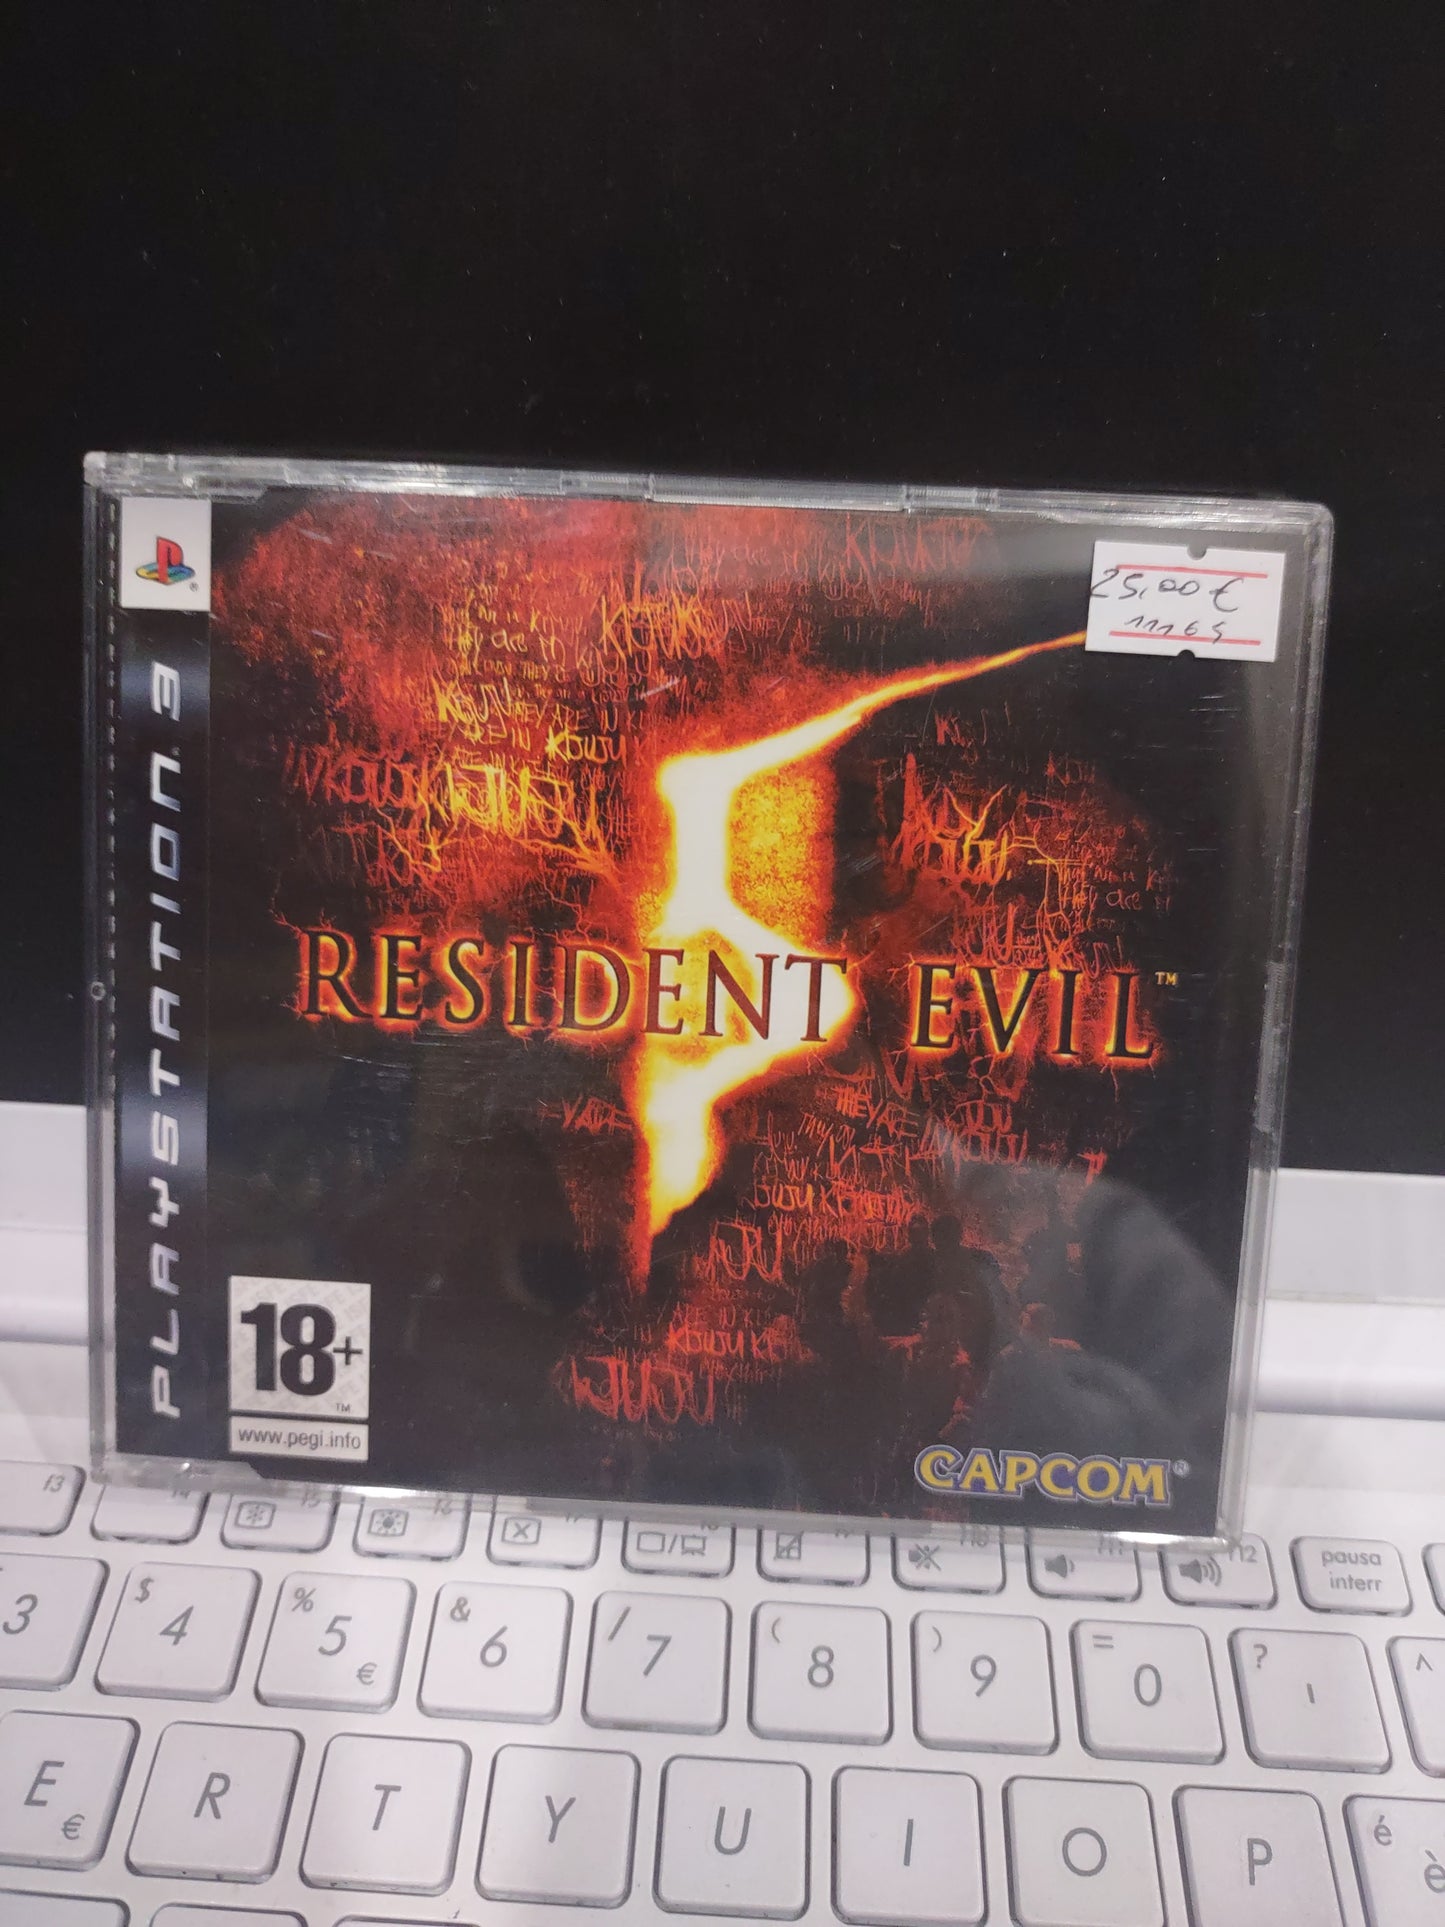 Gioco PS3 promo Resident evil 5 capcom